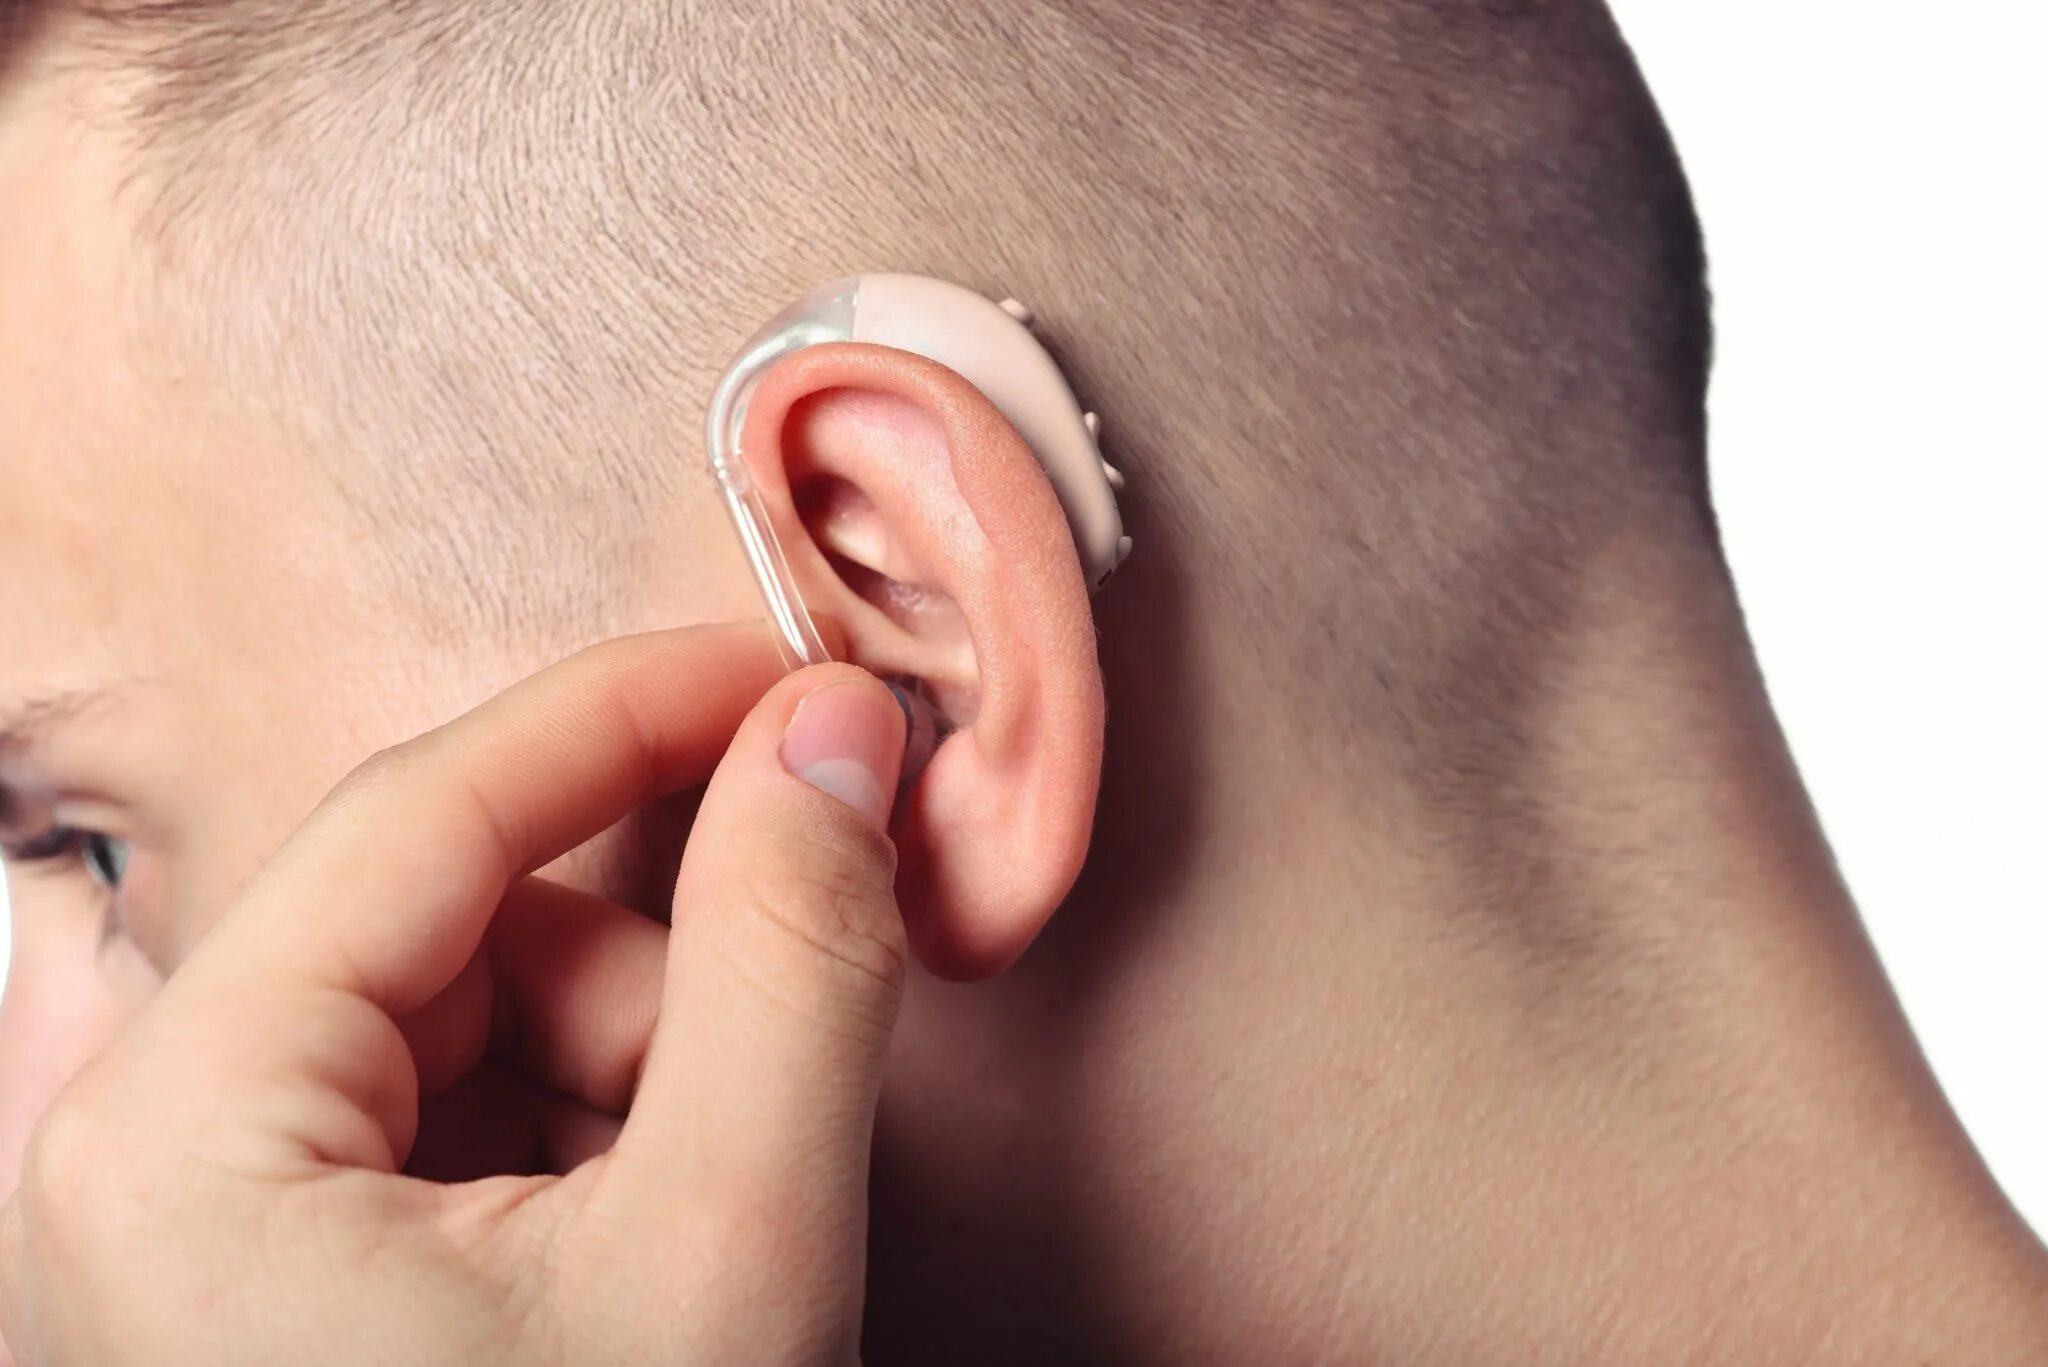 Музыкальный слух у человека. Заушные слуховые аппараты (BTE). Hearing Aid слуховой аппарат. Ушной протез для слуха.